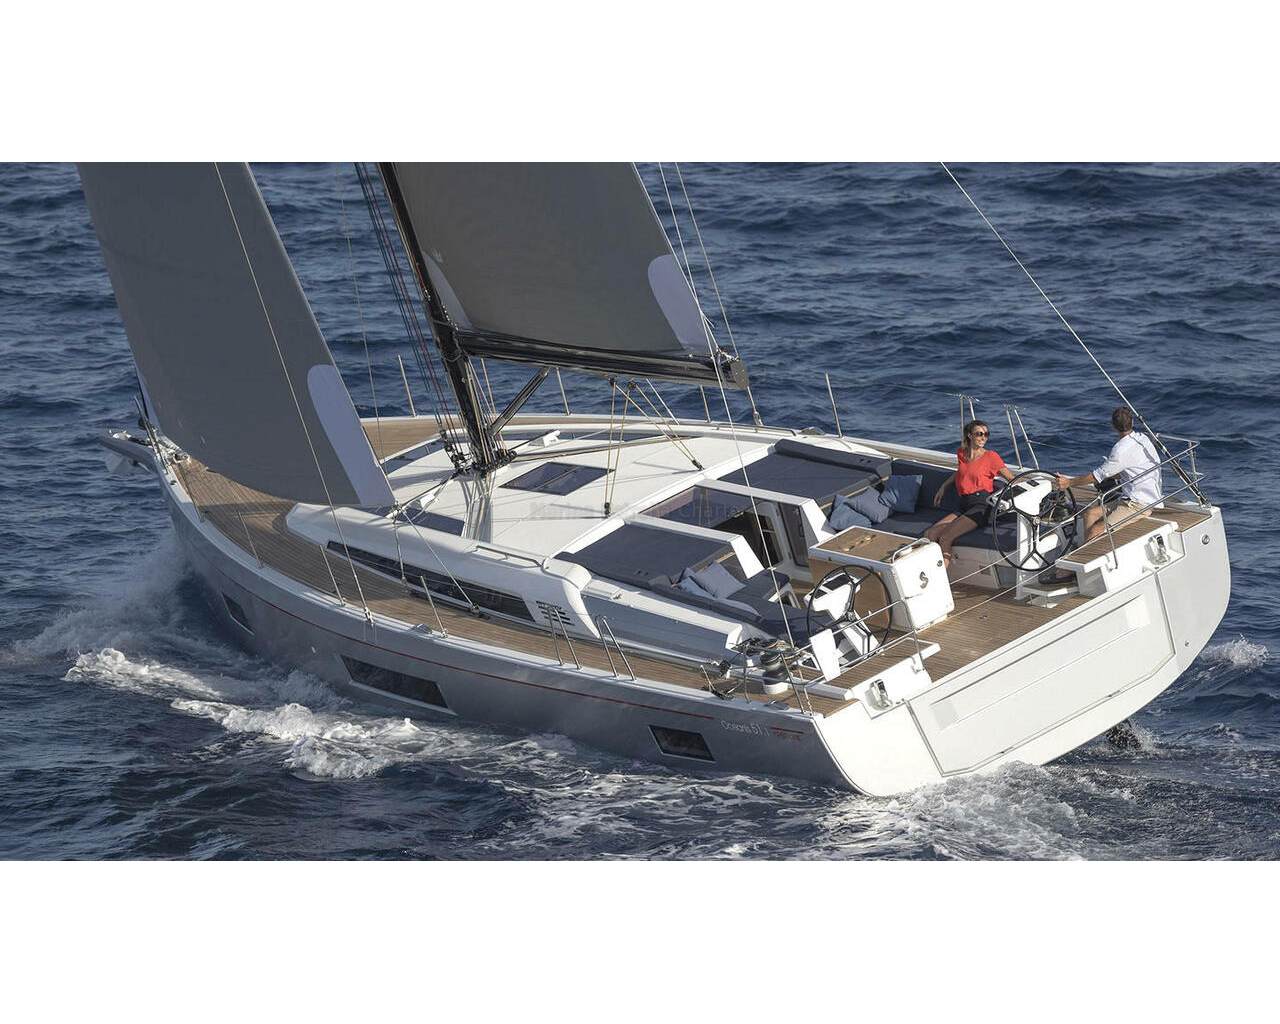 Barco de vela EN CHARTER, de la marca Beneteau modelo Oceanis 51.1 y del año 2023, disponible en Can Pastilla Palma Mallorca España